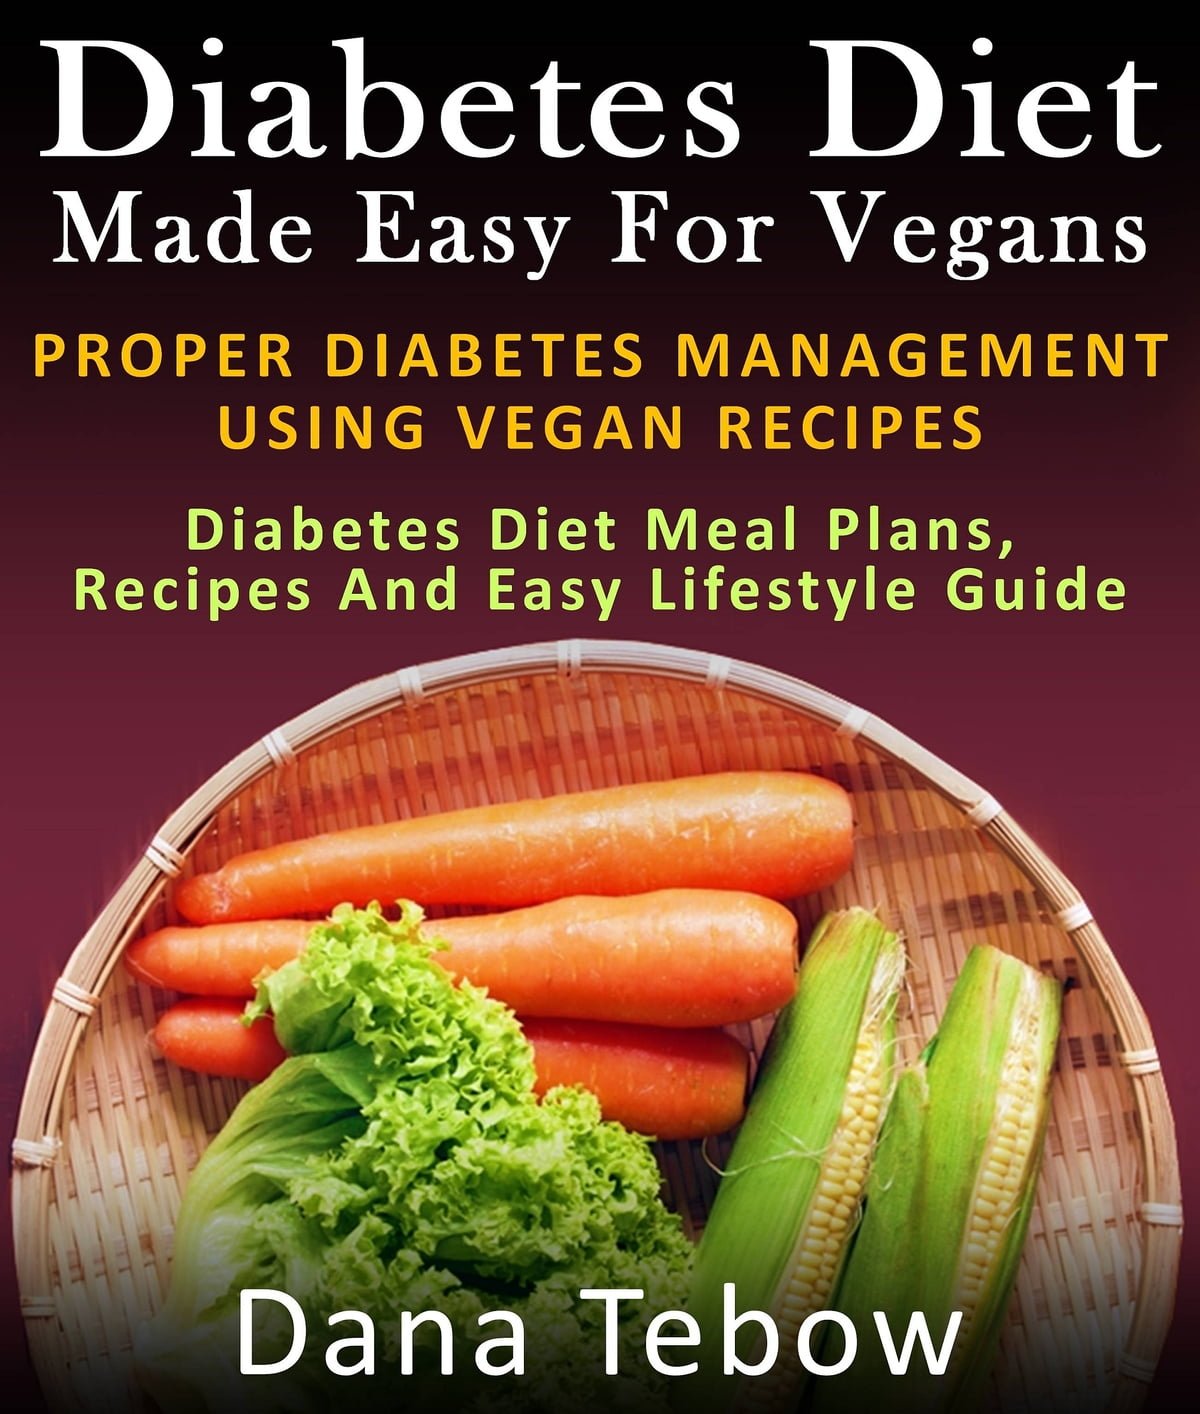 Diet Made Easy For Vegans: Proper Diabetes Management ...